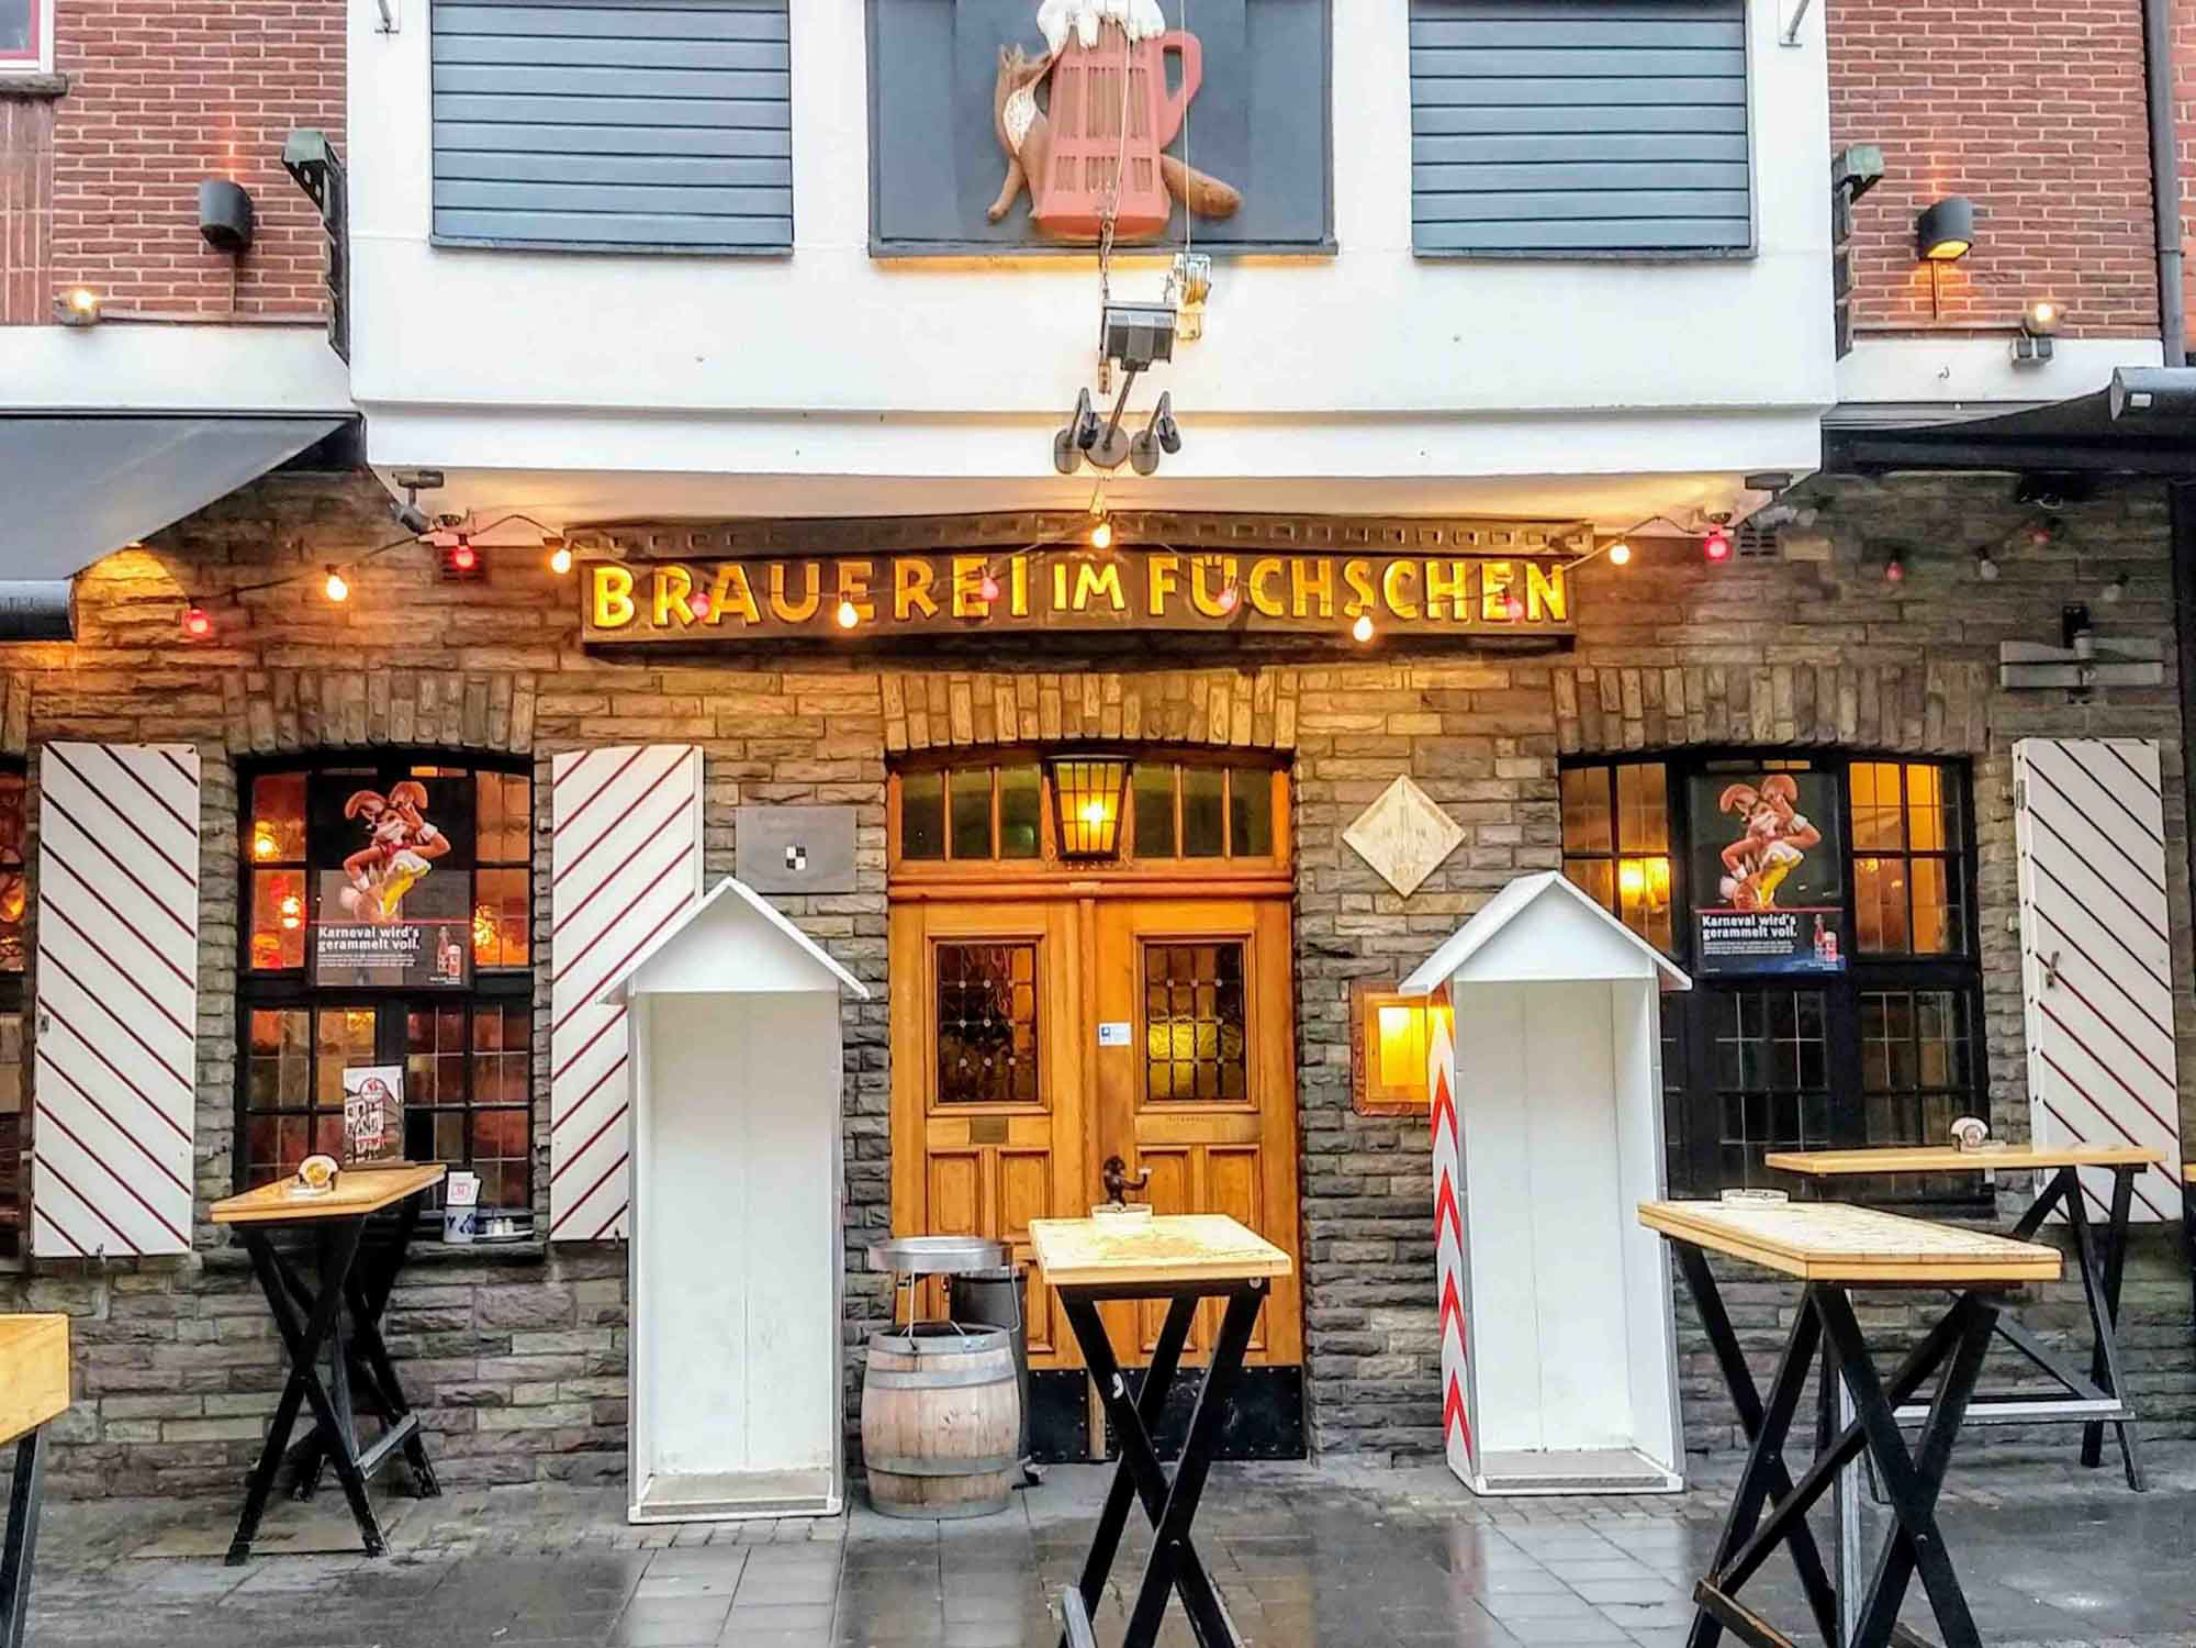 Brewery im Füchschen - Best Pubs in Dusseldorf